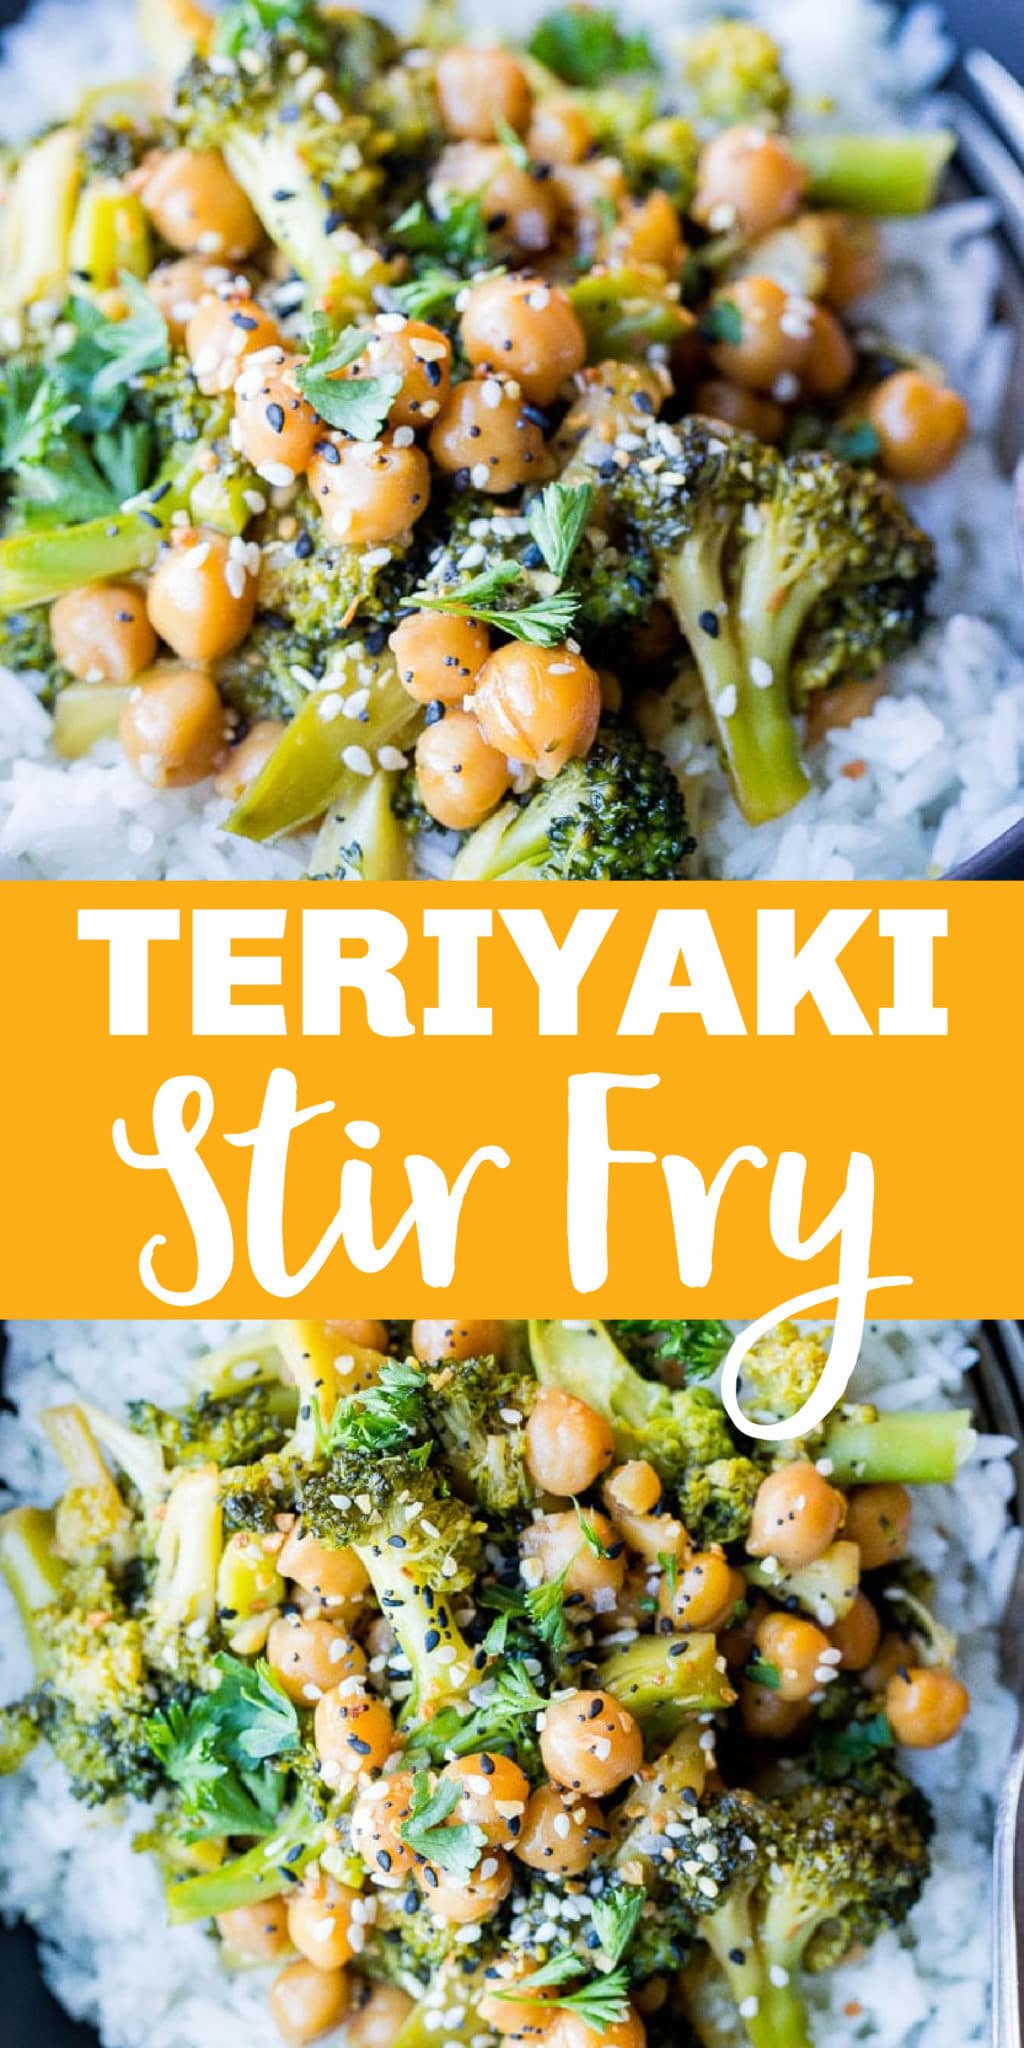 Teriyaki Stir Fry with Broccoli and Chickpeas - She Likes Food